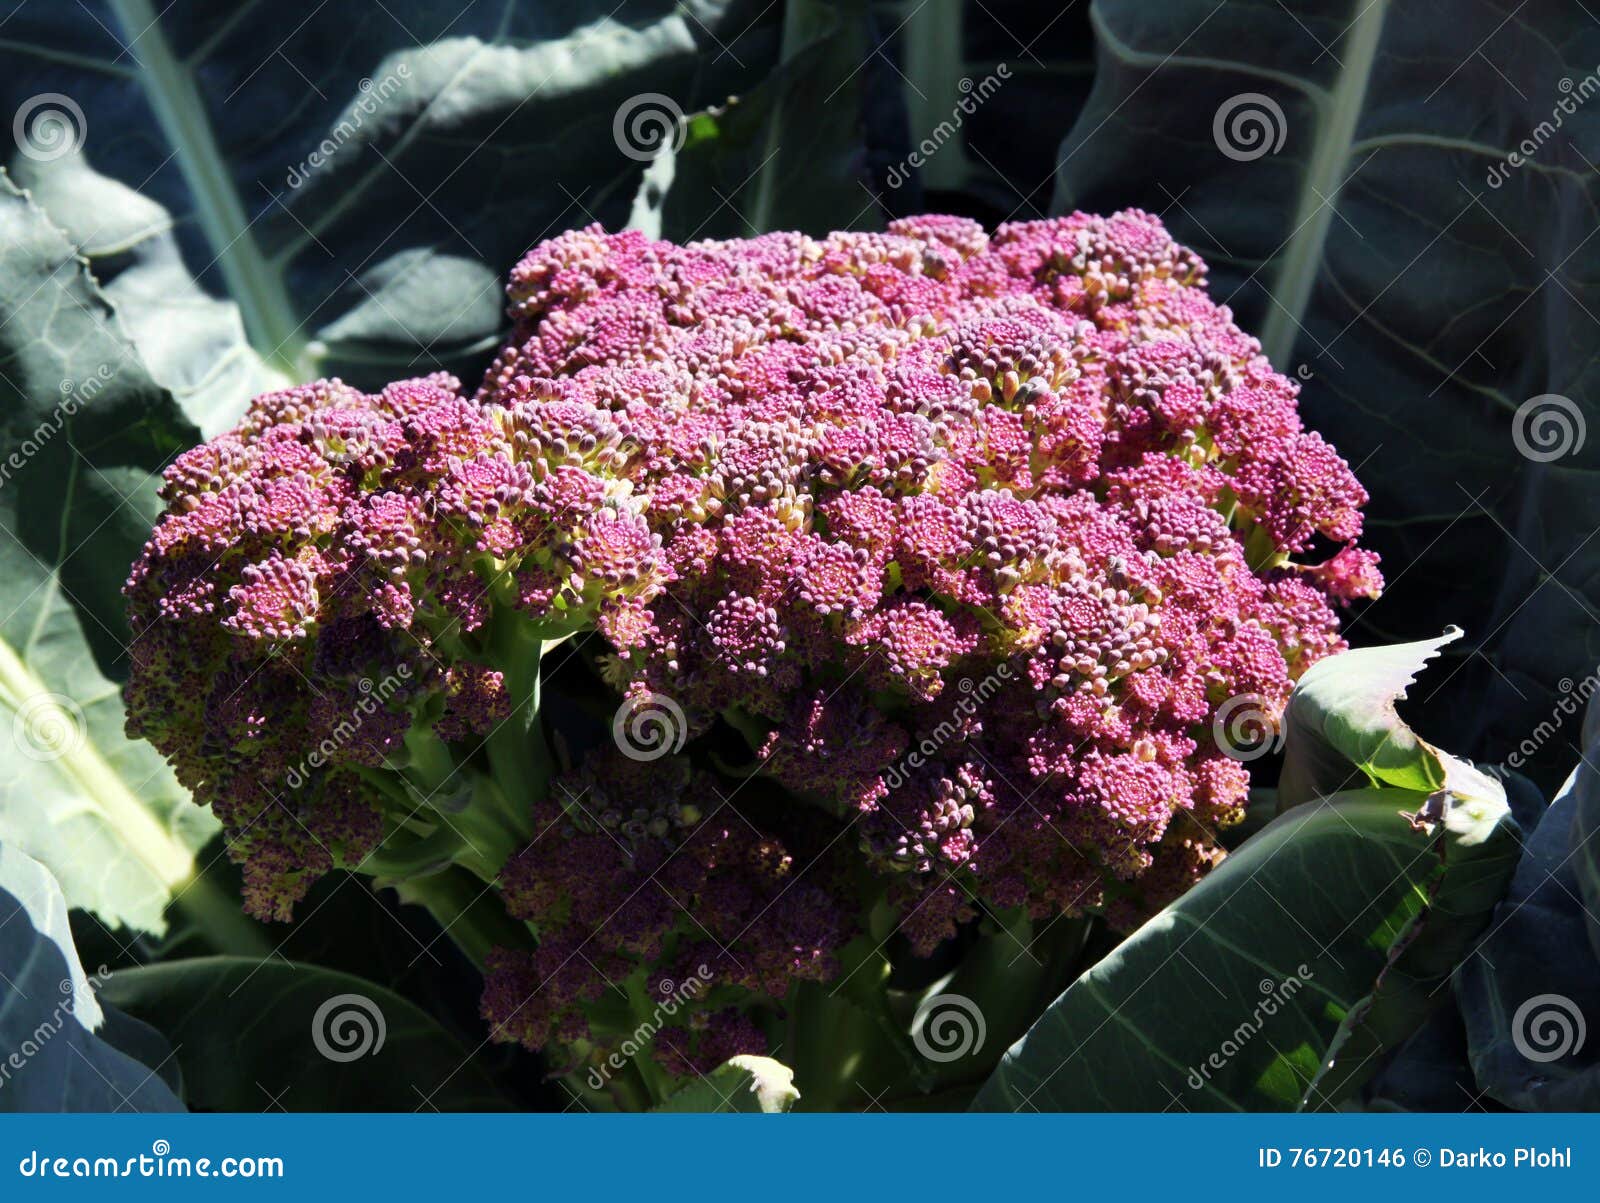 violetta di sicilia cauliflower